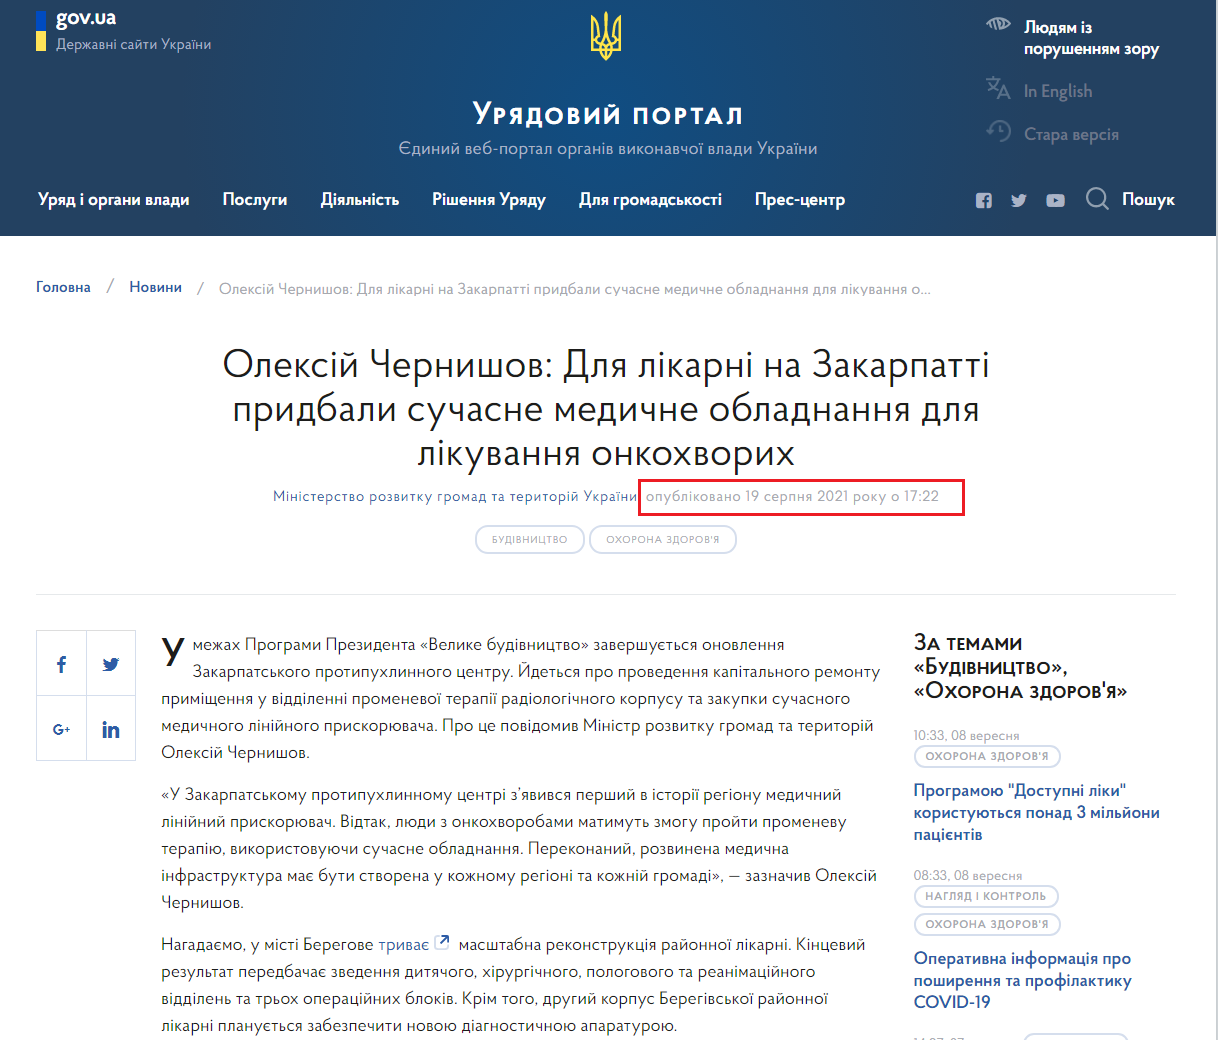 https://www.kmu.gov.ua/news/oleksij-chernishov-dlya-likarni-na-zakarpatti-pridbali-suchasne-medichne-obladnannya-dlya-likuvannya-onkohvorih